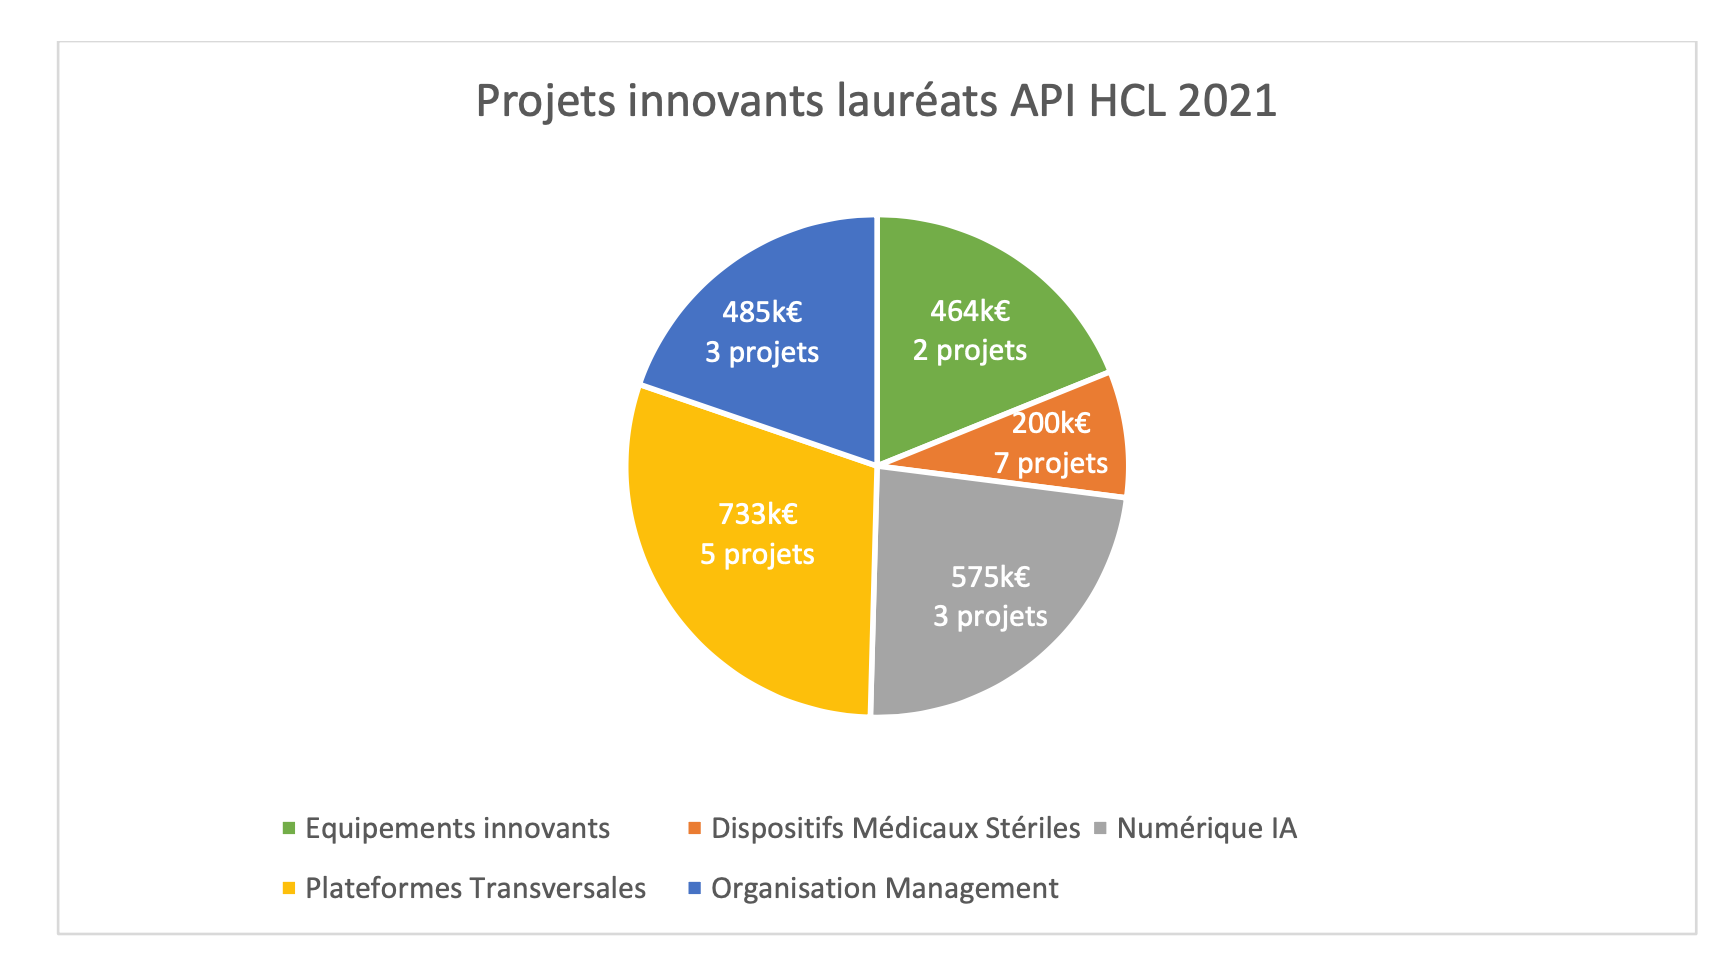 Les HCL investissent dans les équipements innovants